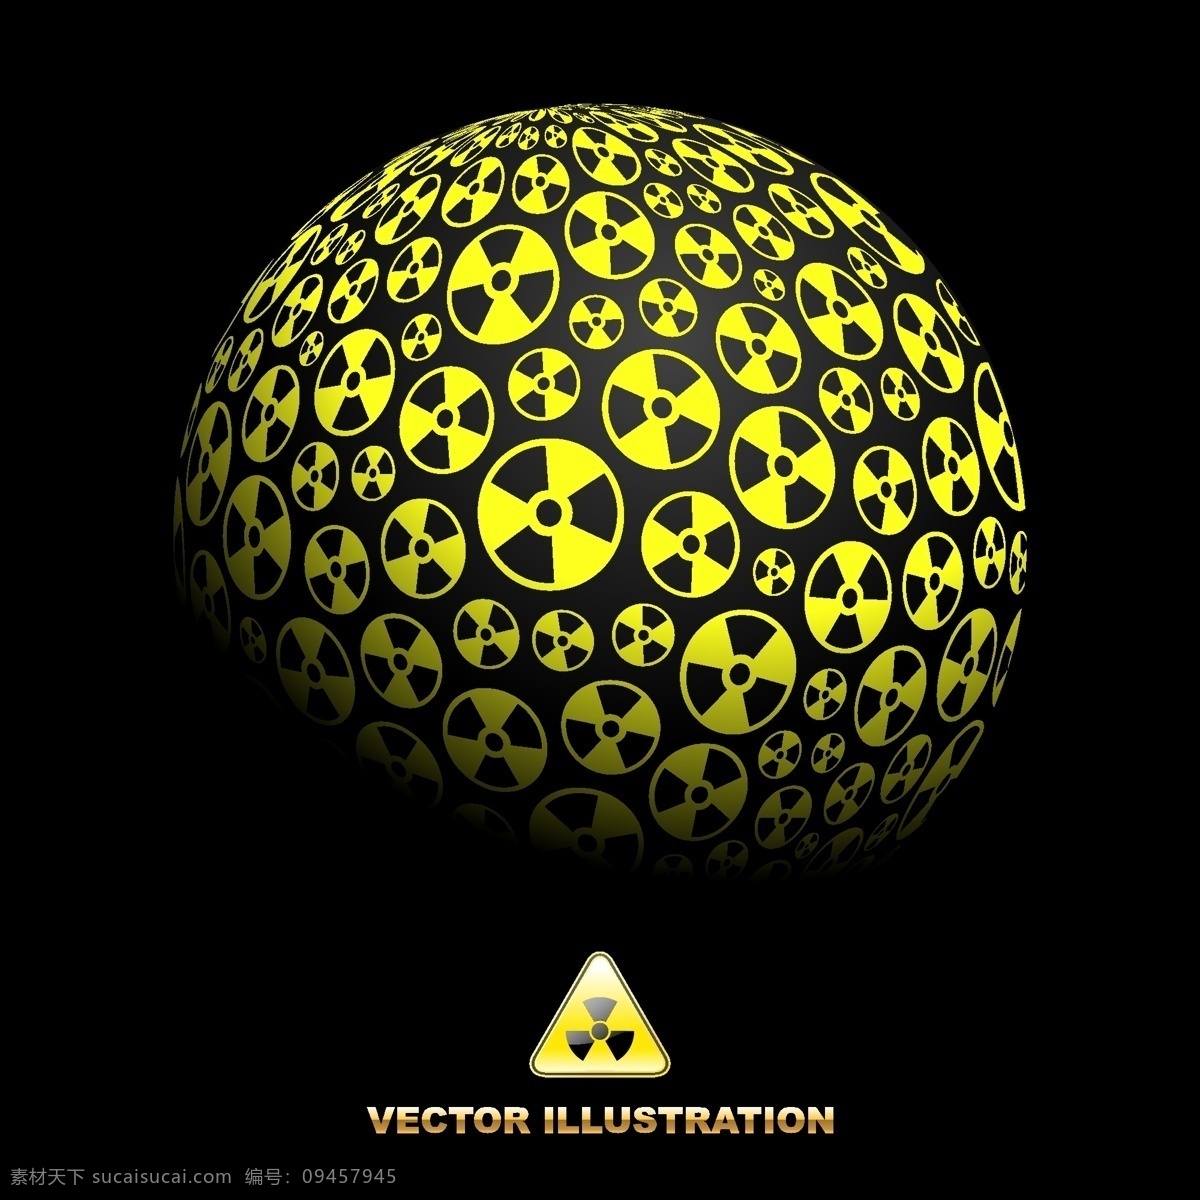 核辐射 标志 组成 圆球 核辐射标志 核辐射图标 矢量 背景 底纹 底纹背景 底纹边框